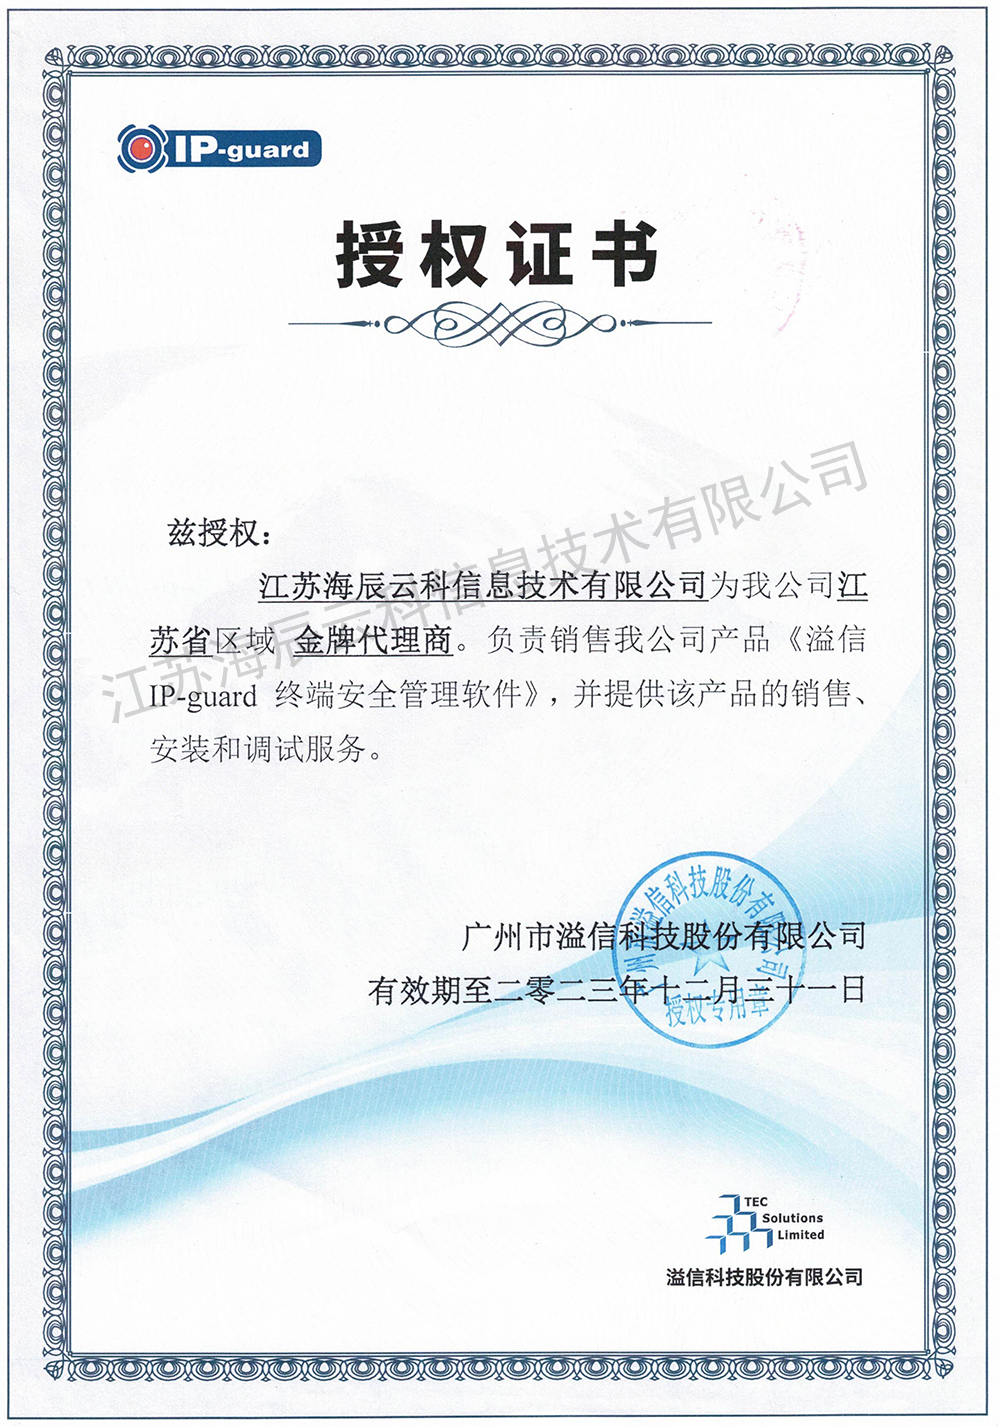 溢信IP-guard金牌代理商授权书-海辰云科-有效期至2023.12.31.jpg